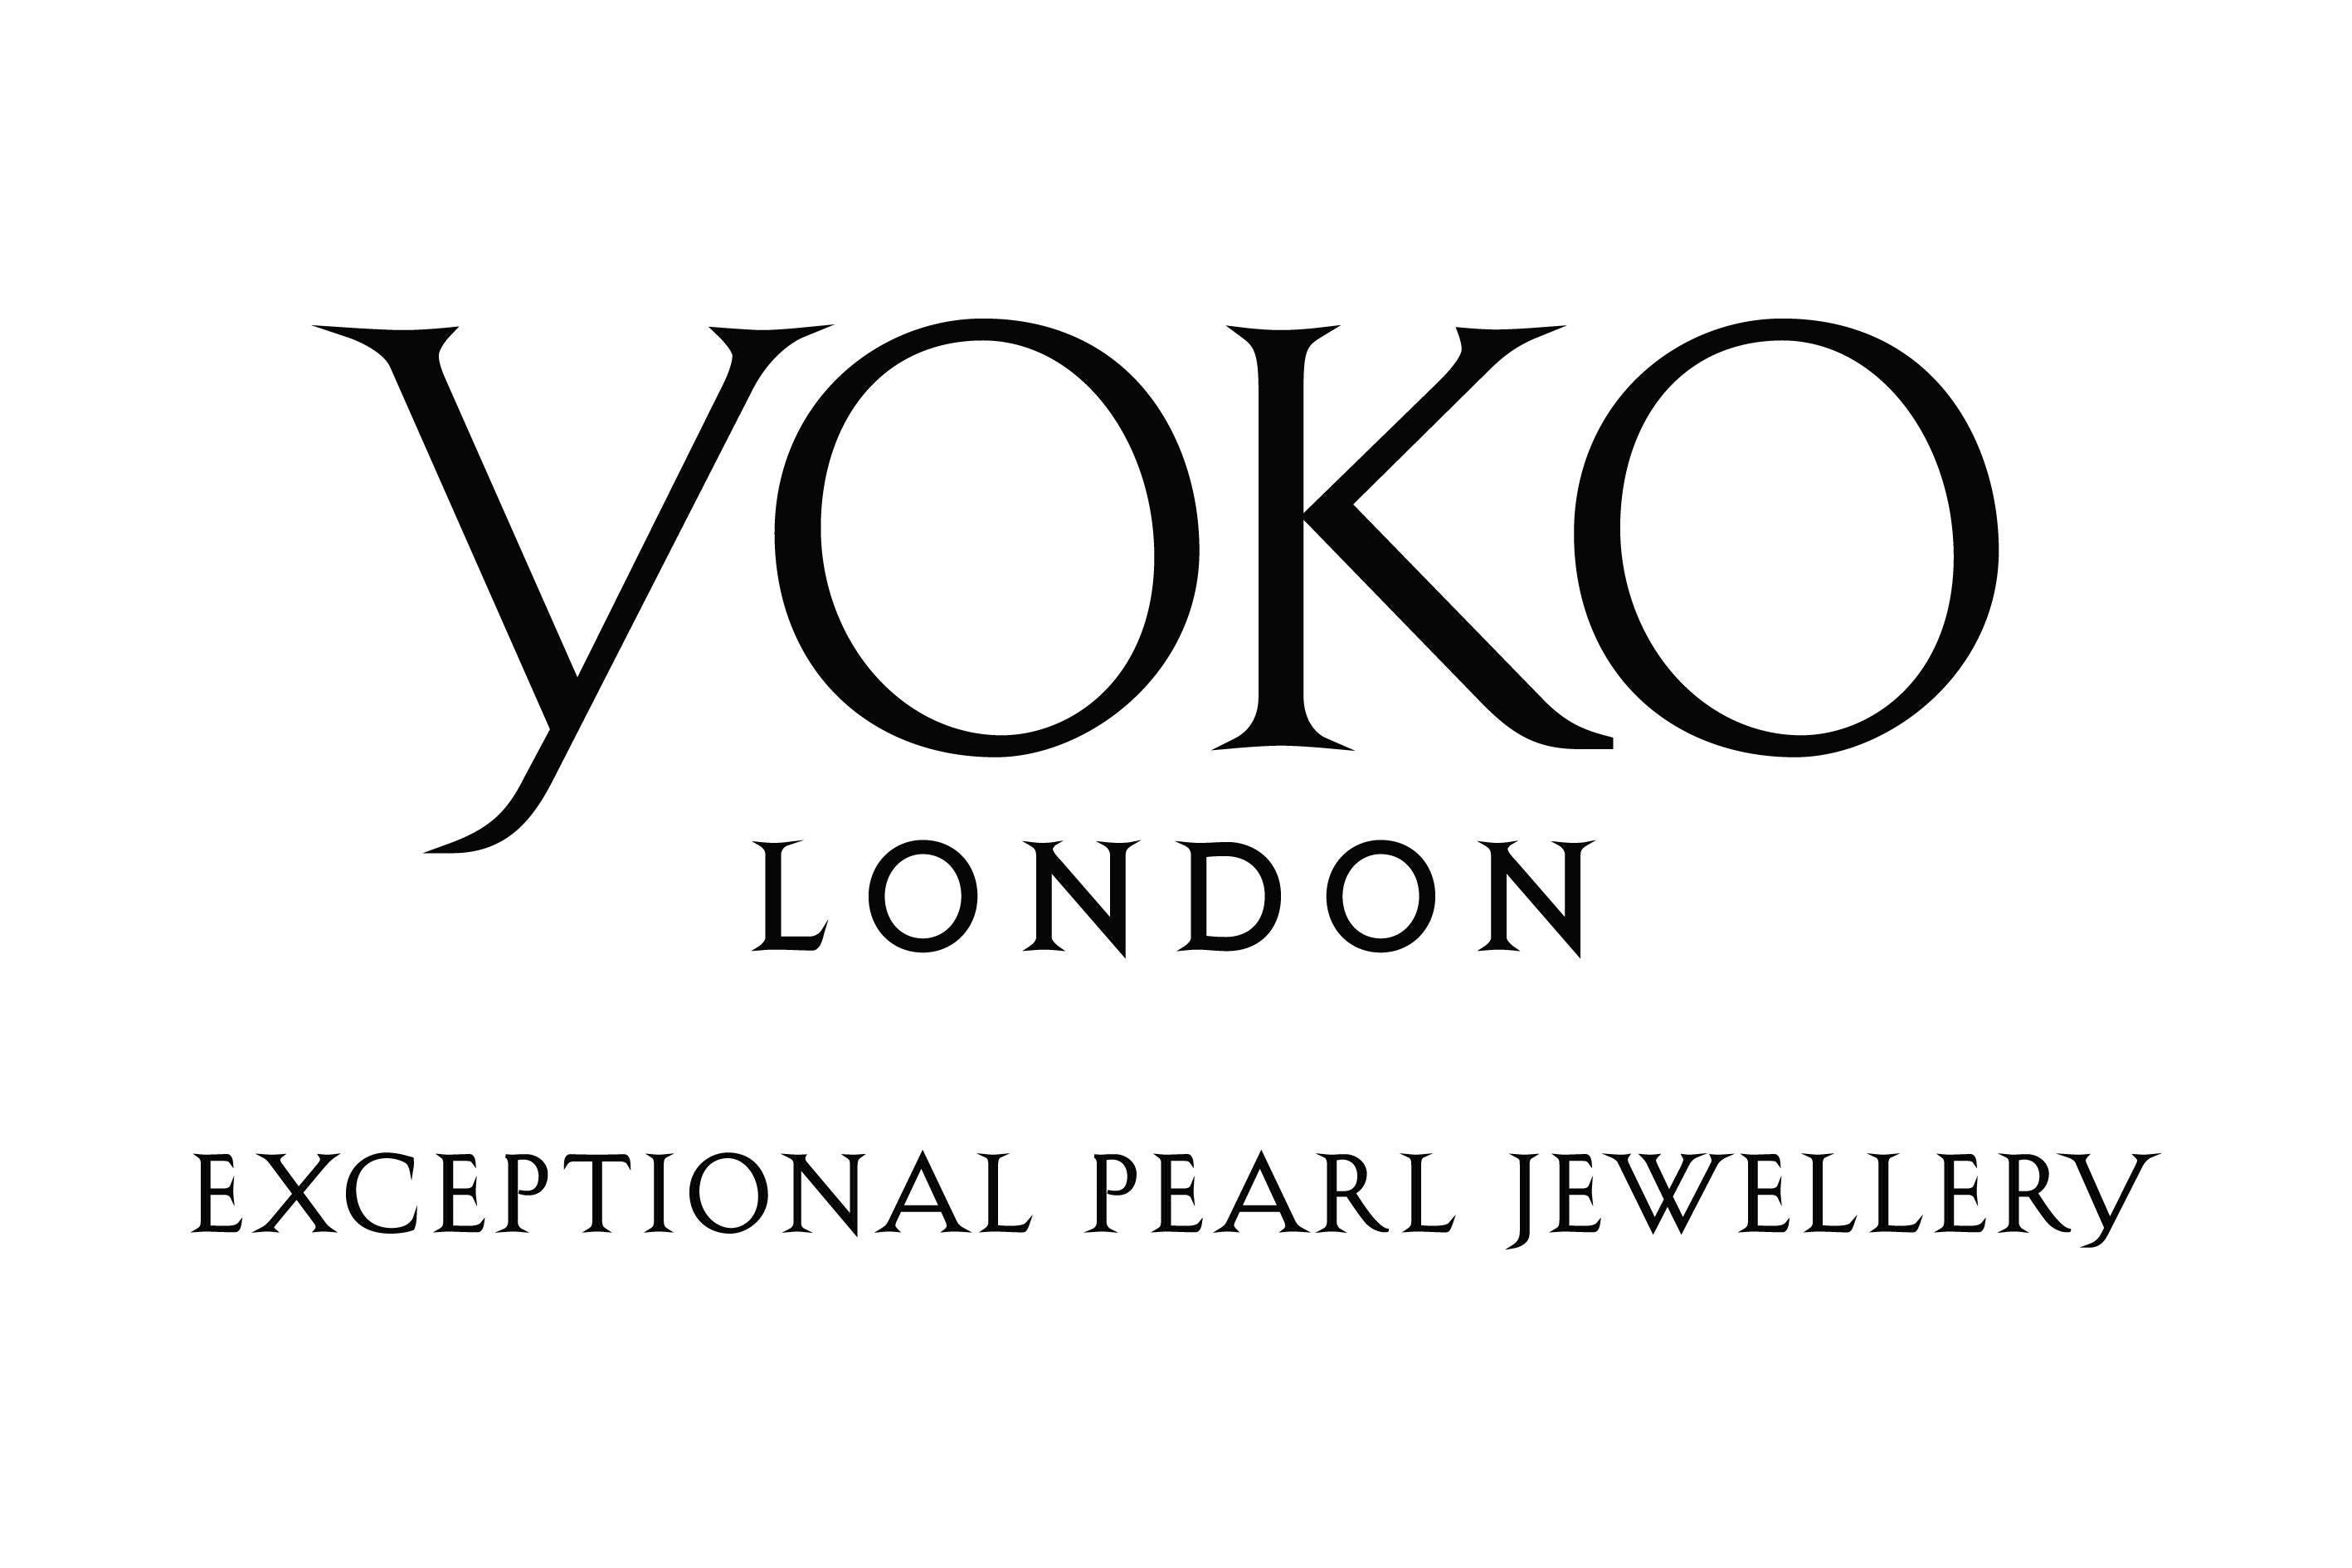 Yoko London Golden South Sea Pearl Stud Earring in 18 Karat White Gold 1